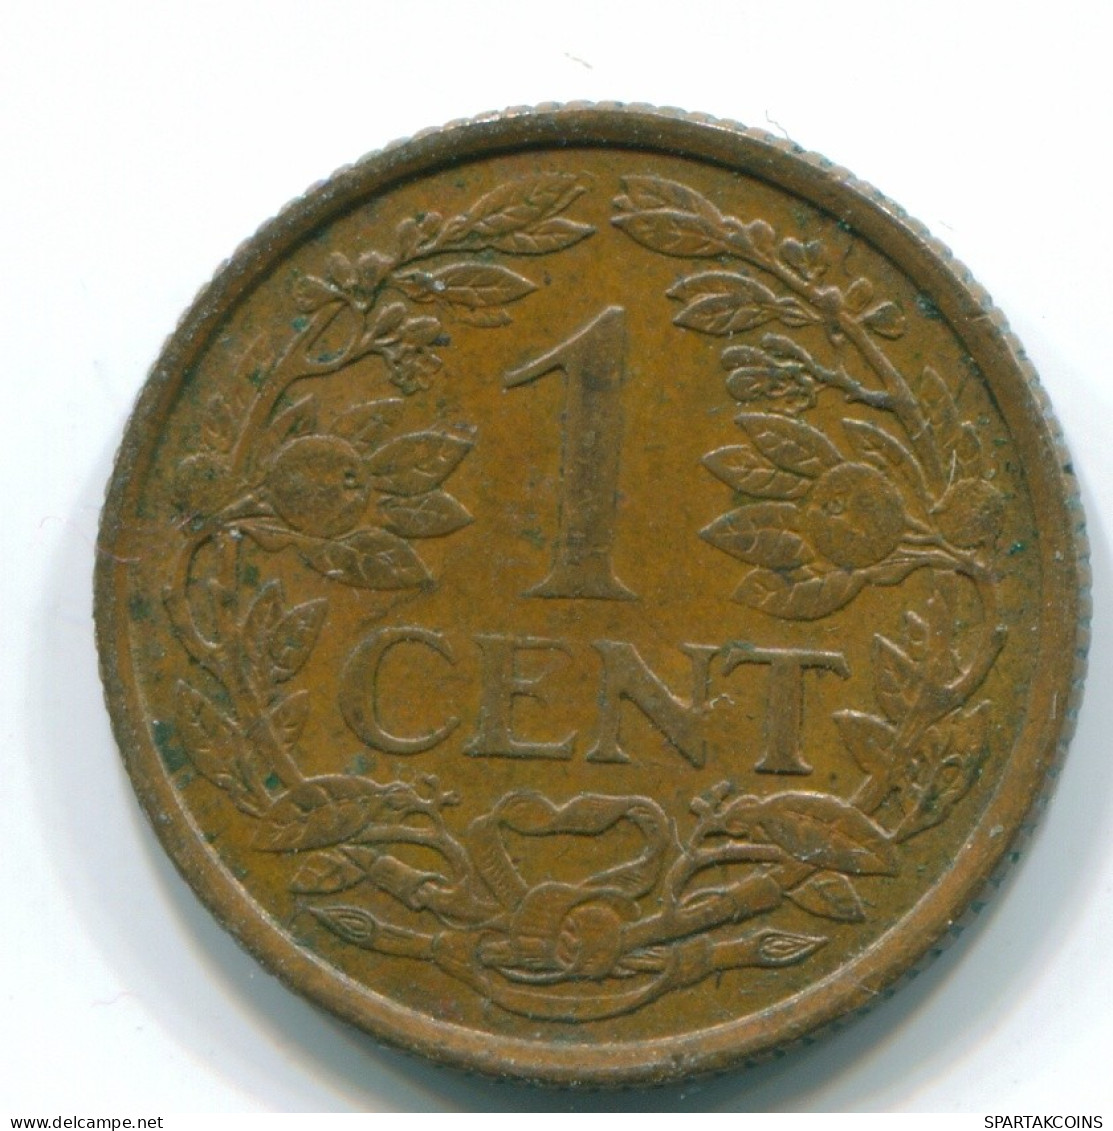 1 CENT 1963 NETHERLANDS ANTILLES Bronze Fish Colonial Coin #S11085.U.A - Antilles Néerlandaises